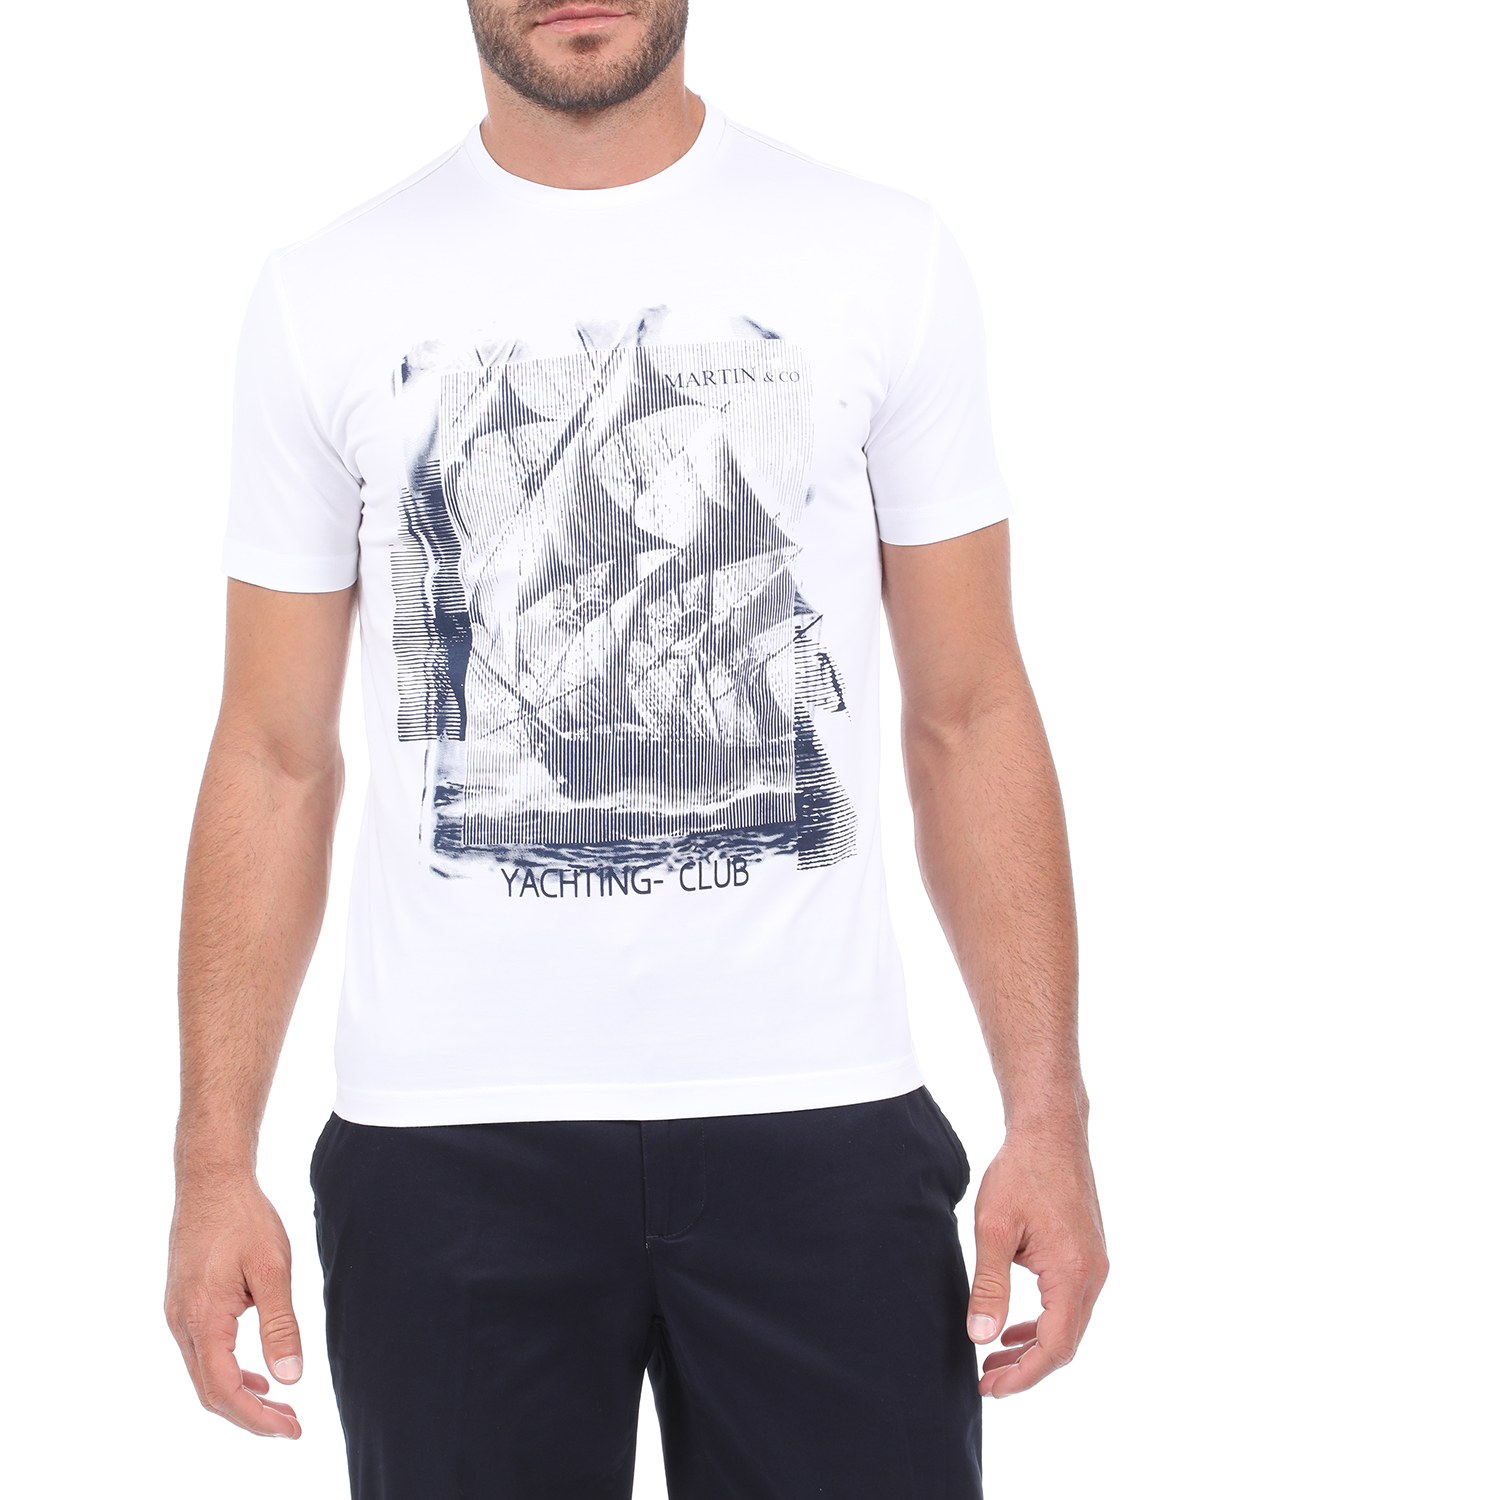 Ανδρικά/Ρούχα/Μπλούζες/Κοντομάνικες MARTIN & CO - Ανδρικό t-shirt MARTIN & CO λευκό